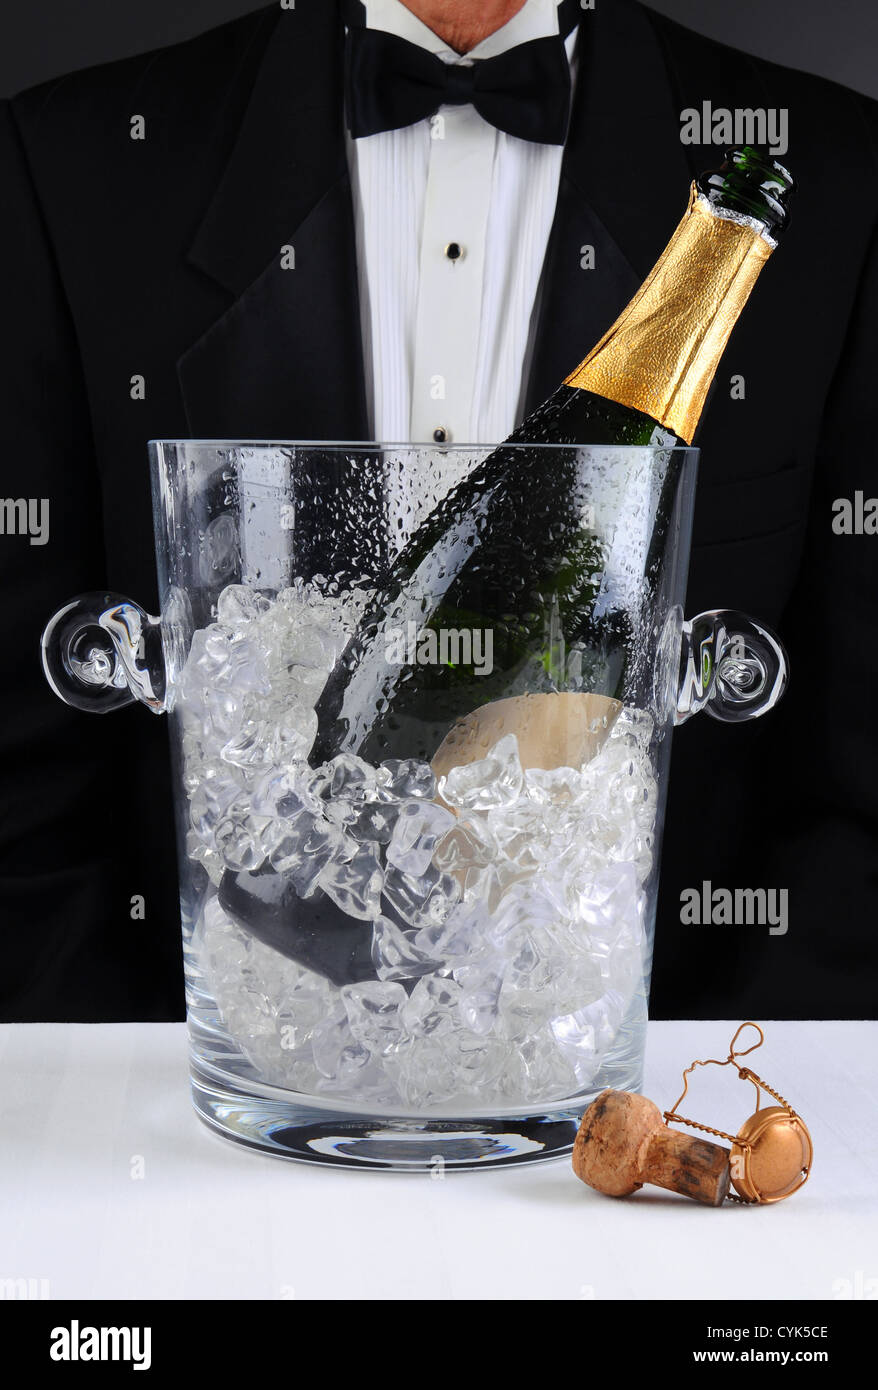 Libre d'un garçon debout derrière un seau à champagne, profondeur de champ à l'homme est méconnaissable. Format vertical. Banque D'Images